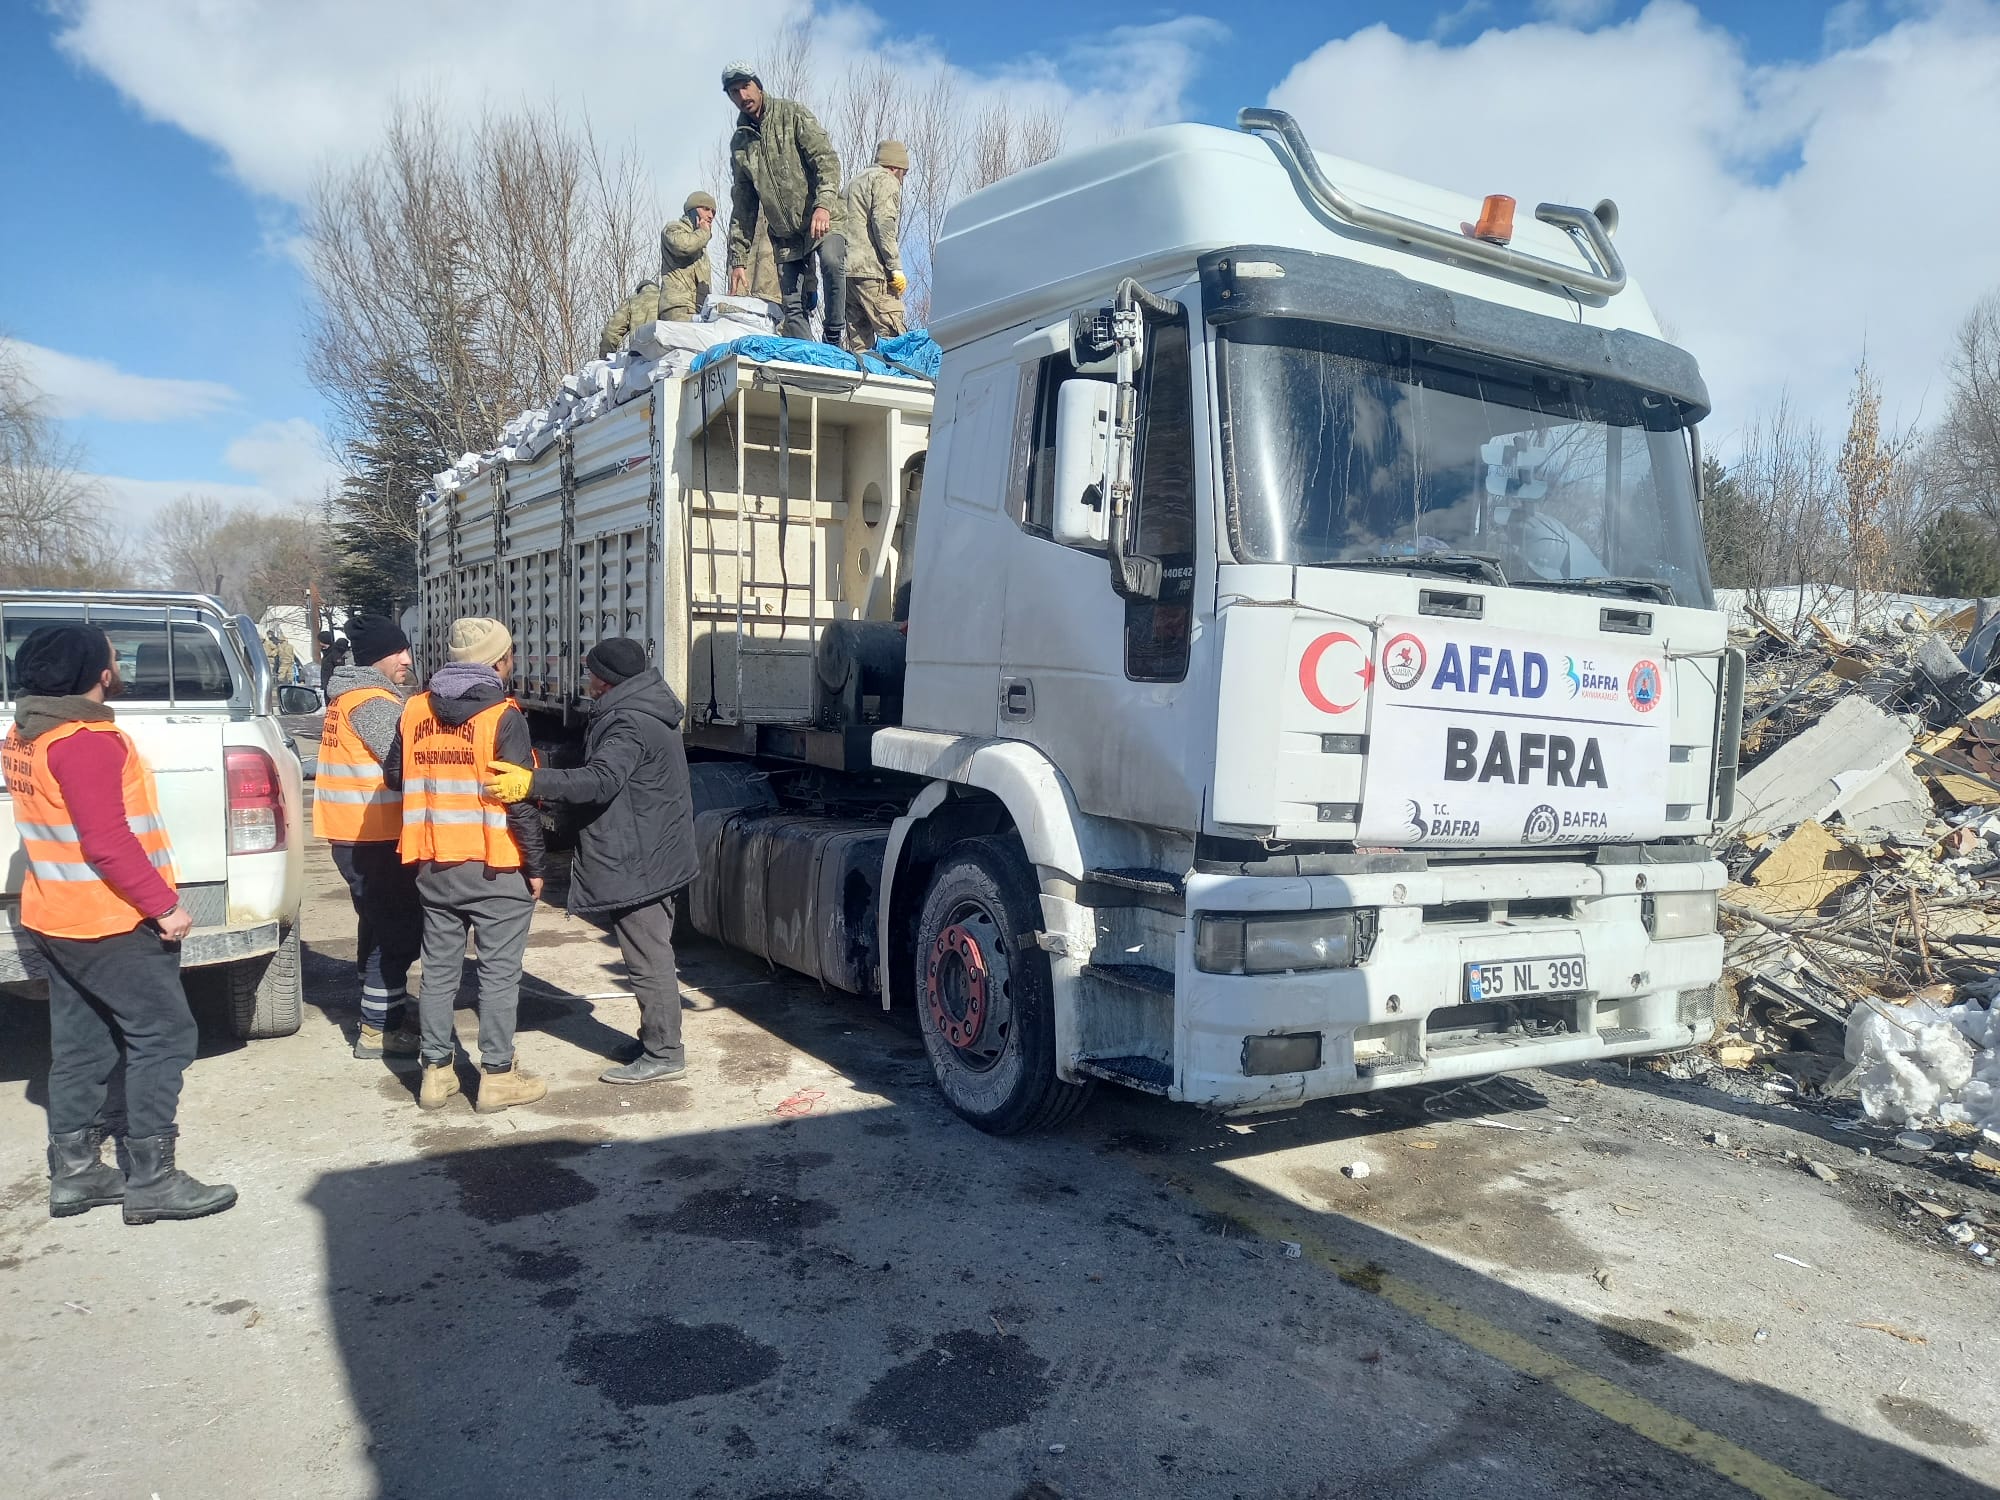 Bafra’dan deprem bölgesine yakacak desteği